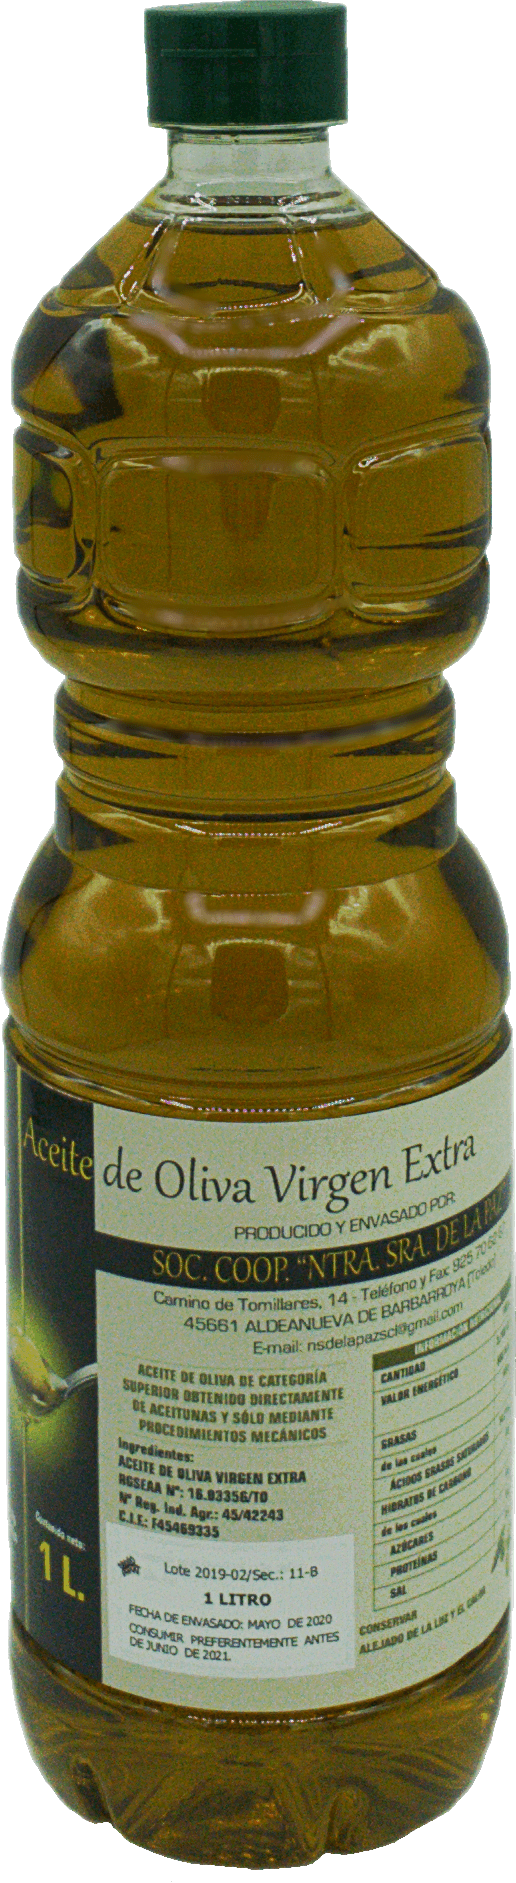 Aceite de Oliva Virgen Extra "Nuestra Señora de la Paz" 1000ml.